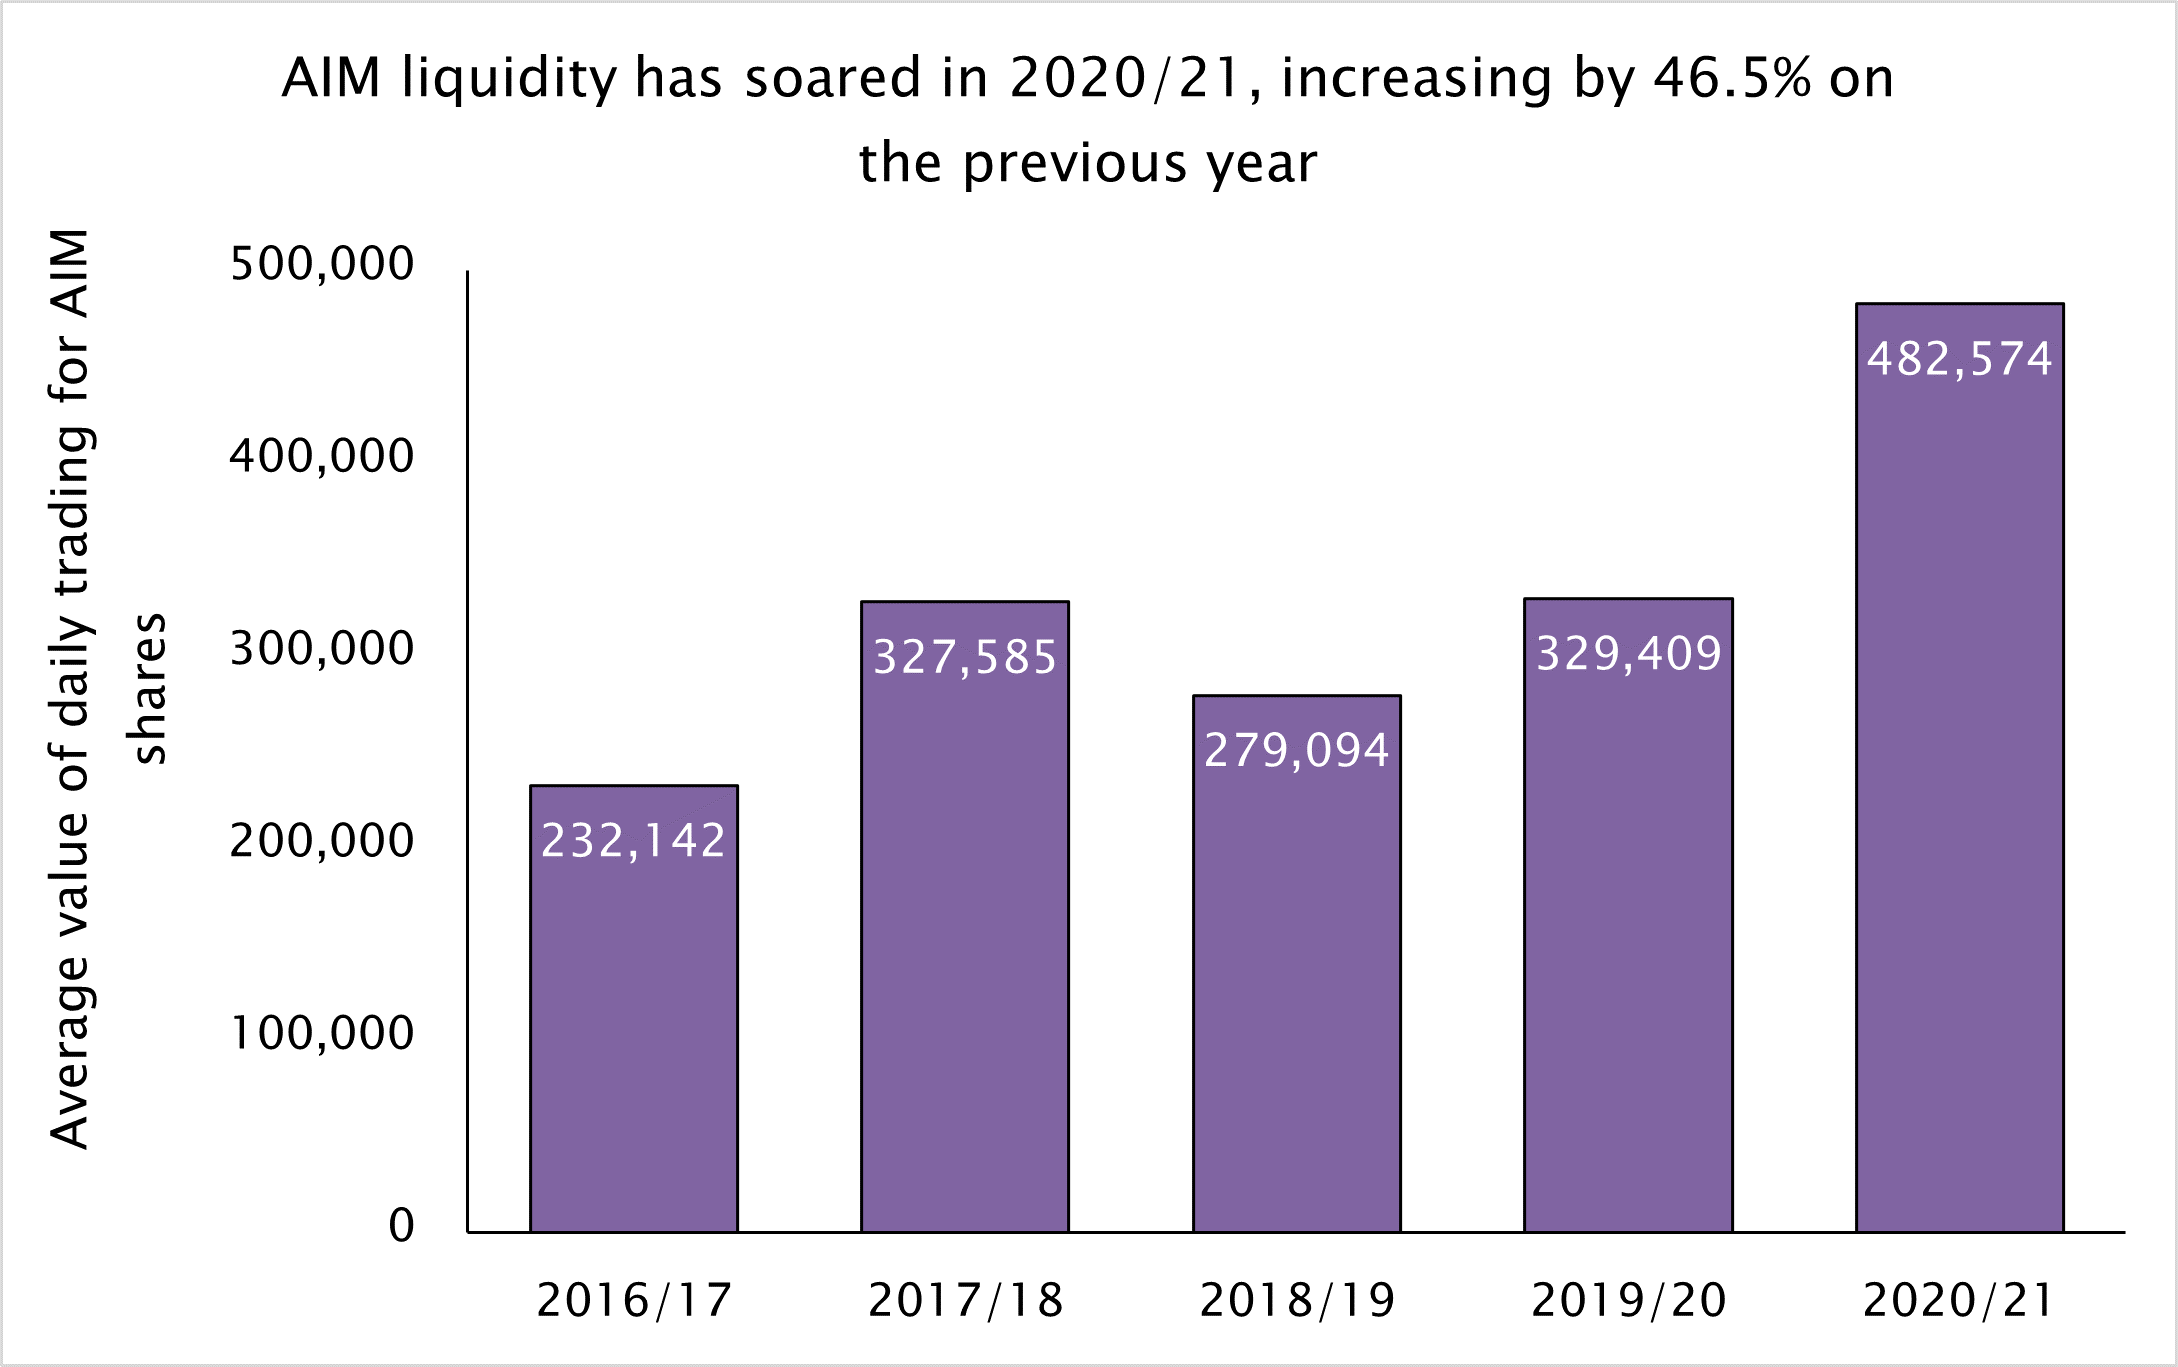 AIM liquidity has soared in 2020/21